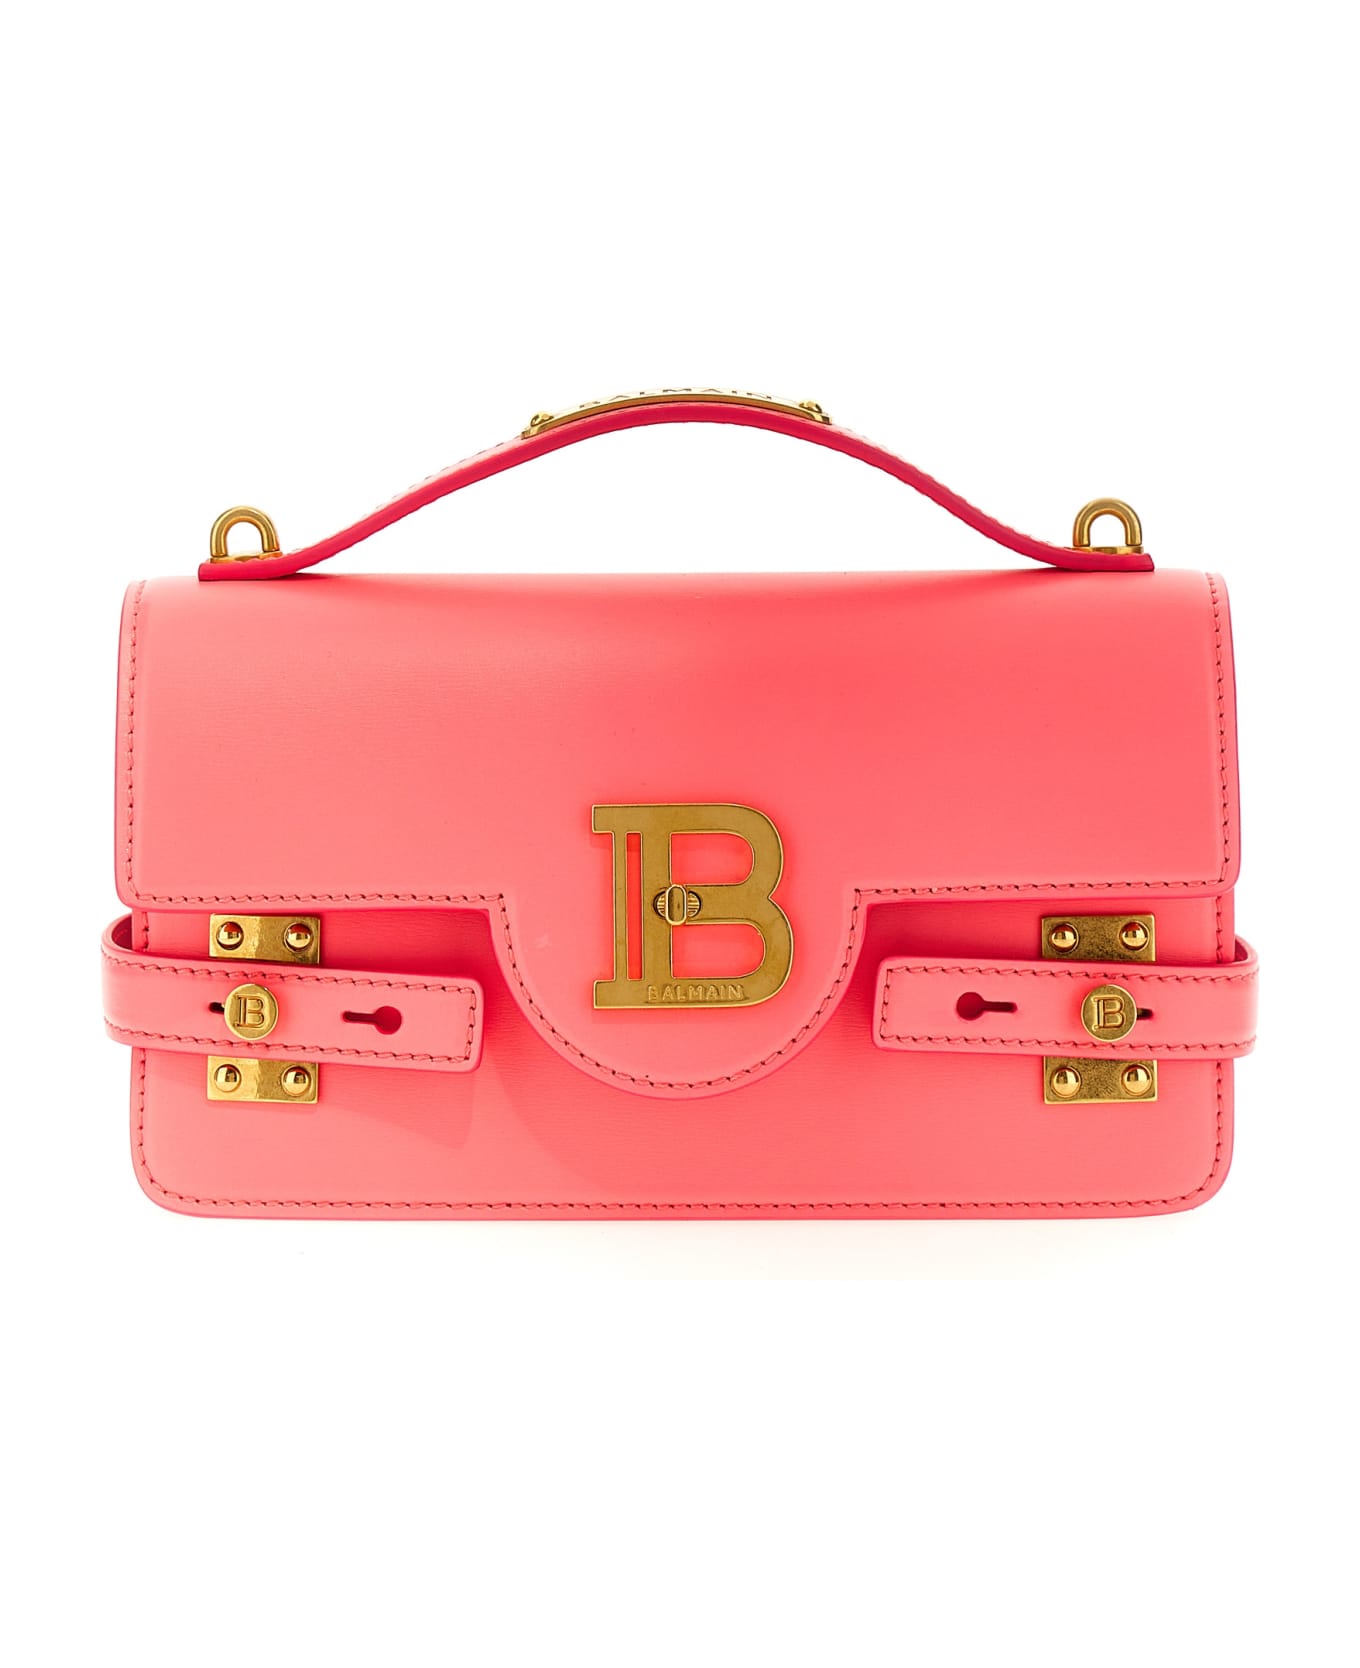 Balmain B Buzz 24 Handbag - Pink トートバッグ